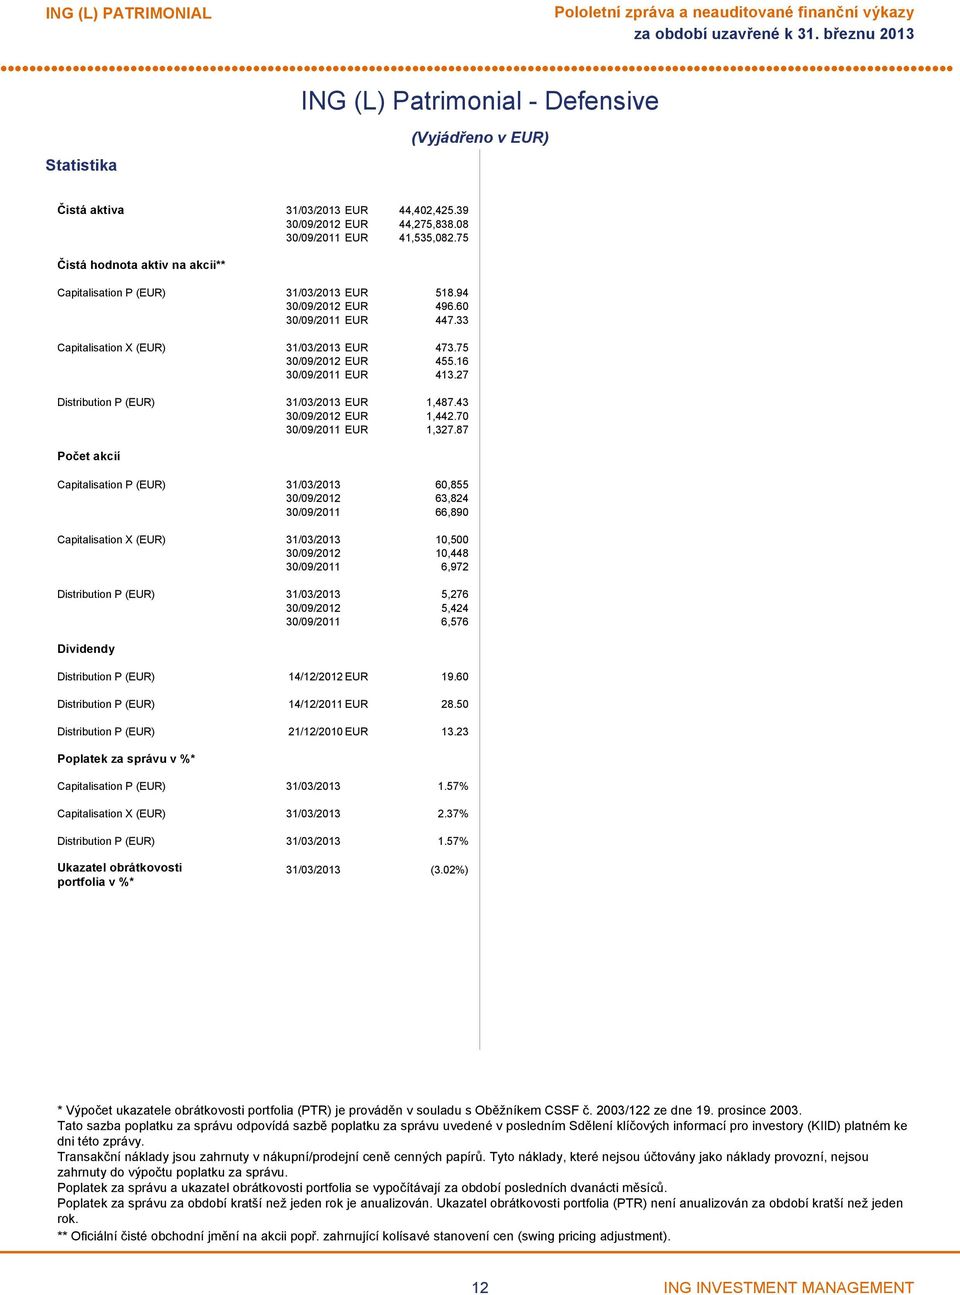 27 Distribution P (EUR) 31/03/2013 EUR 1,487.43 EUR 1,442.70 EUR 1,327.